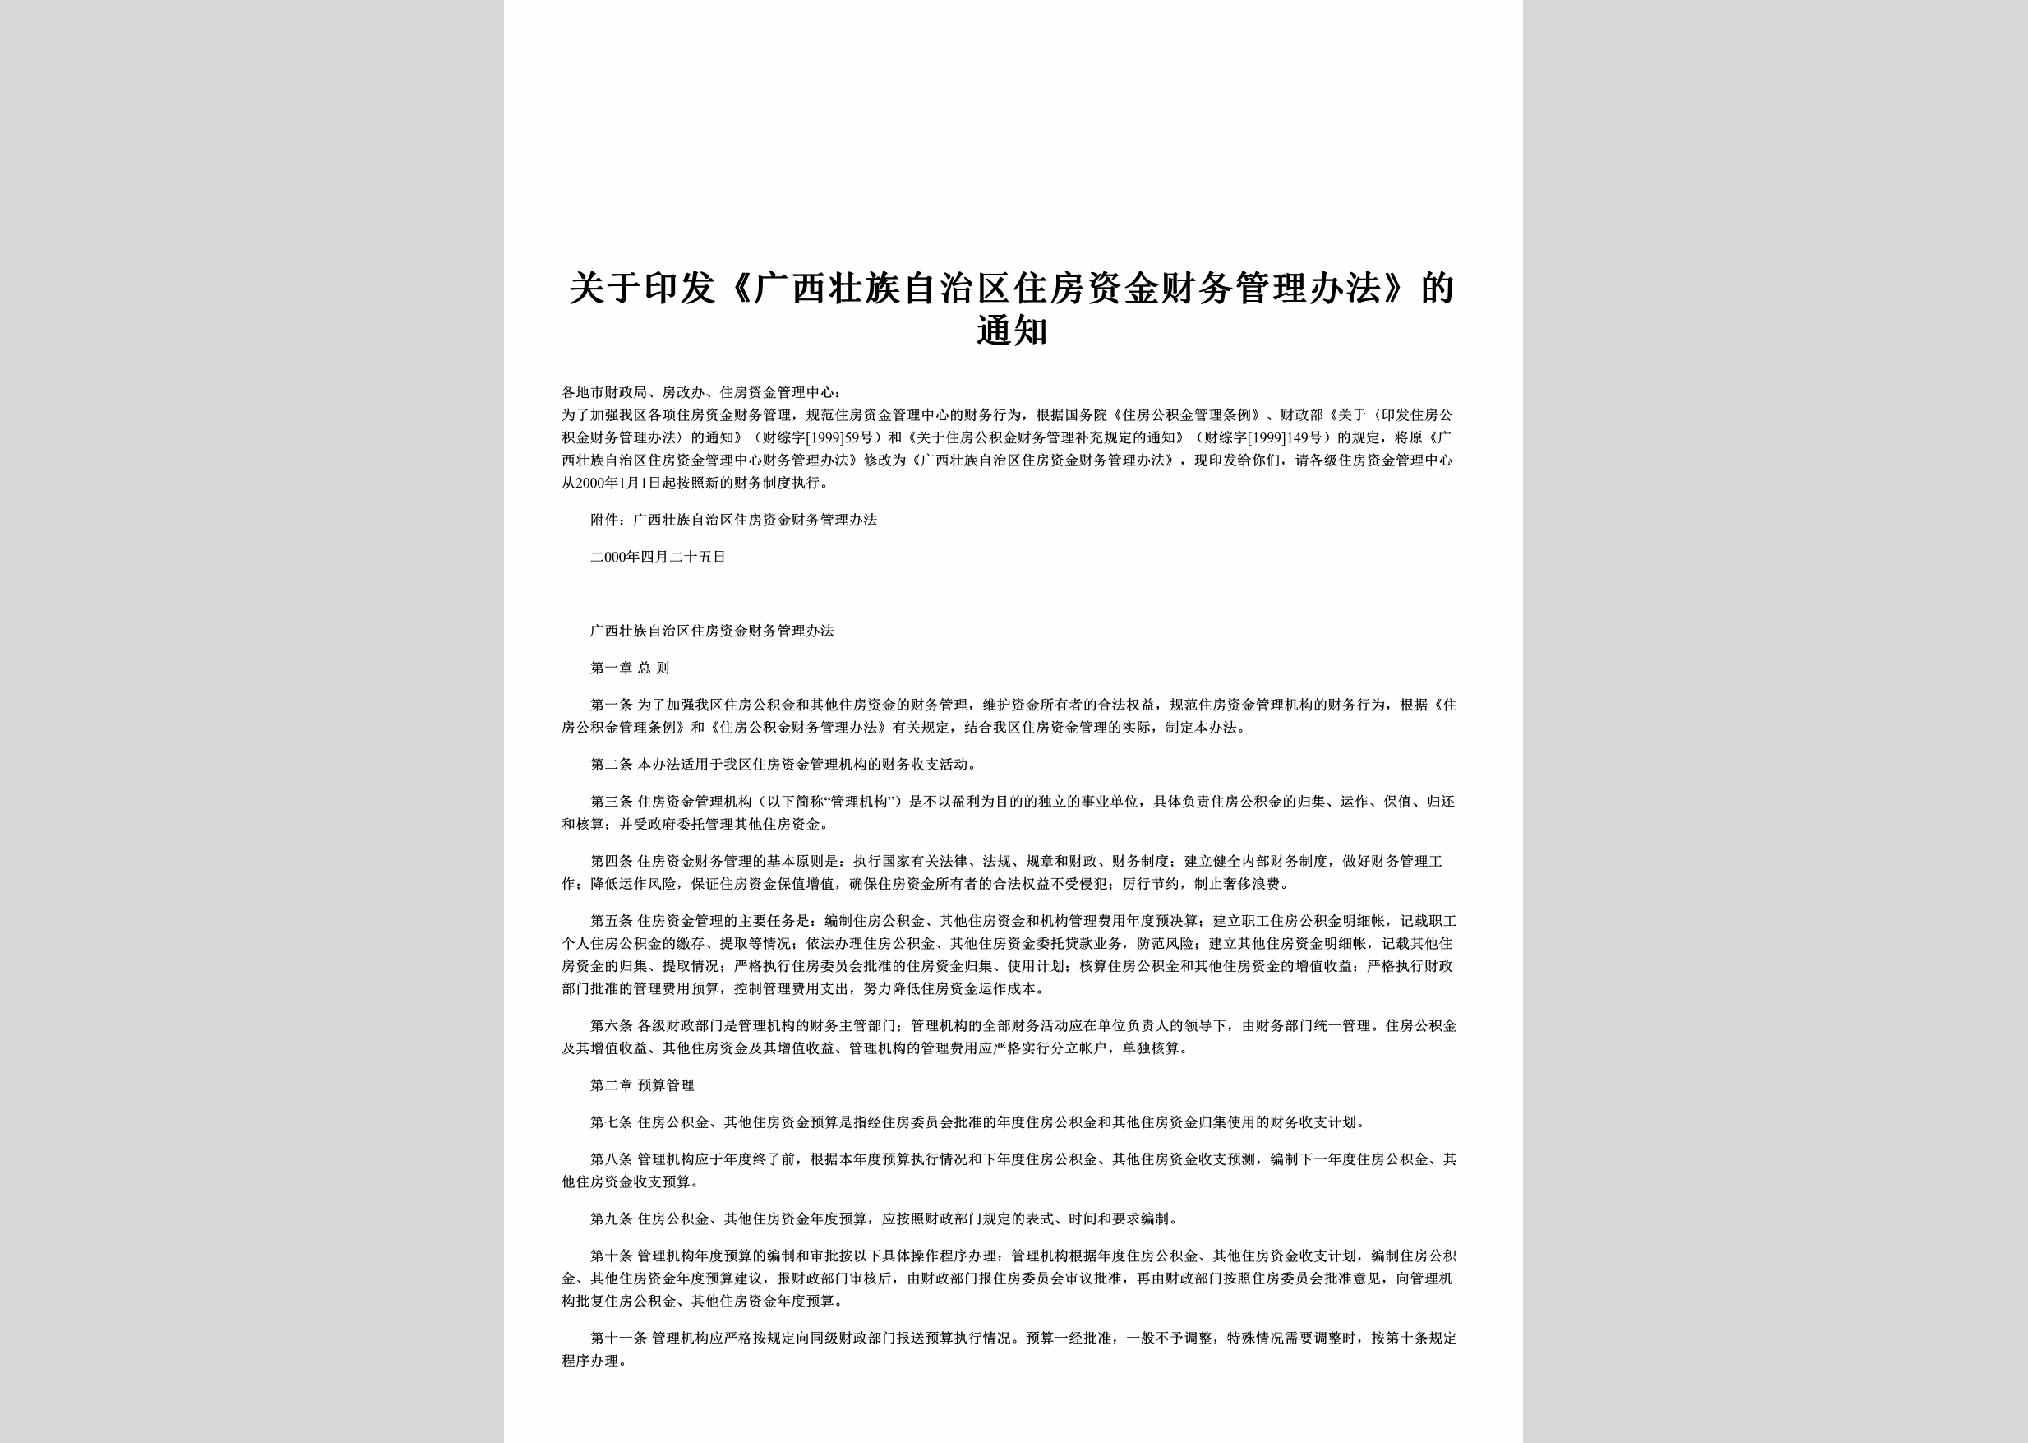 桂财综字[2000]29号：关于印发《广西壮族自治区住房资金财务管理办法》的通知